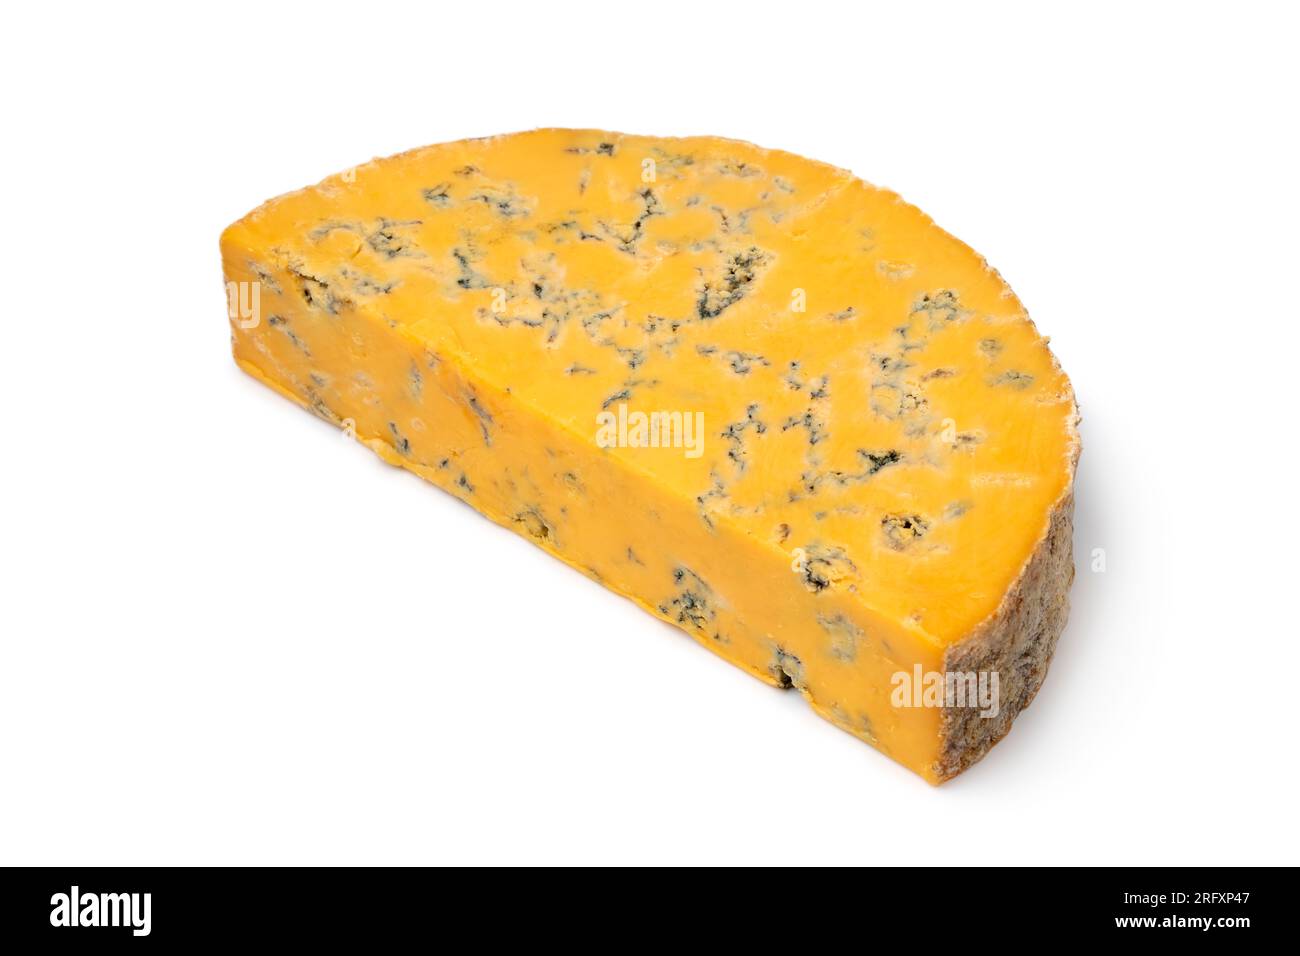 Morceau de fromage bleu anglais Shropshire isolé sur fond blanc en gros plan Banque D'Images